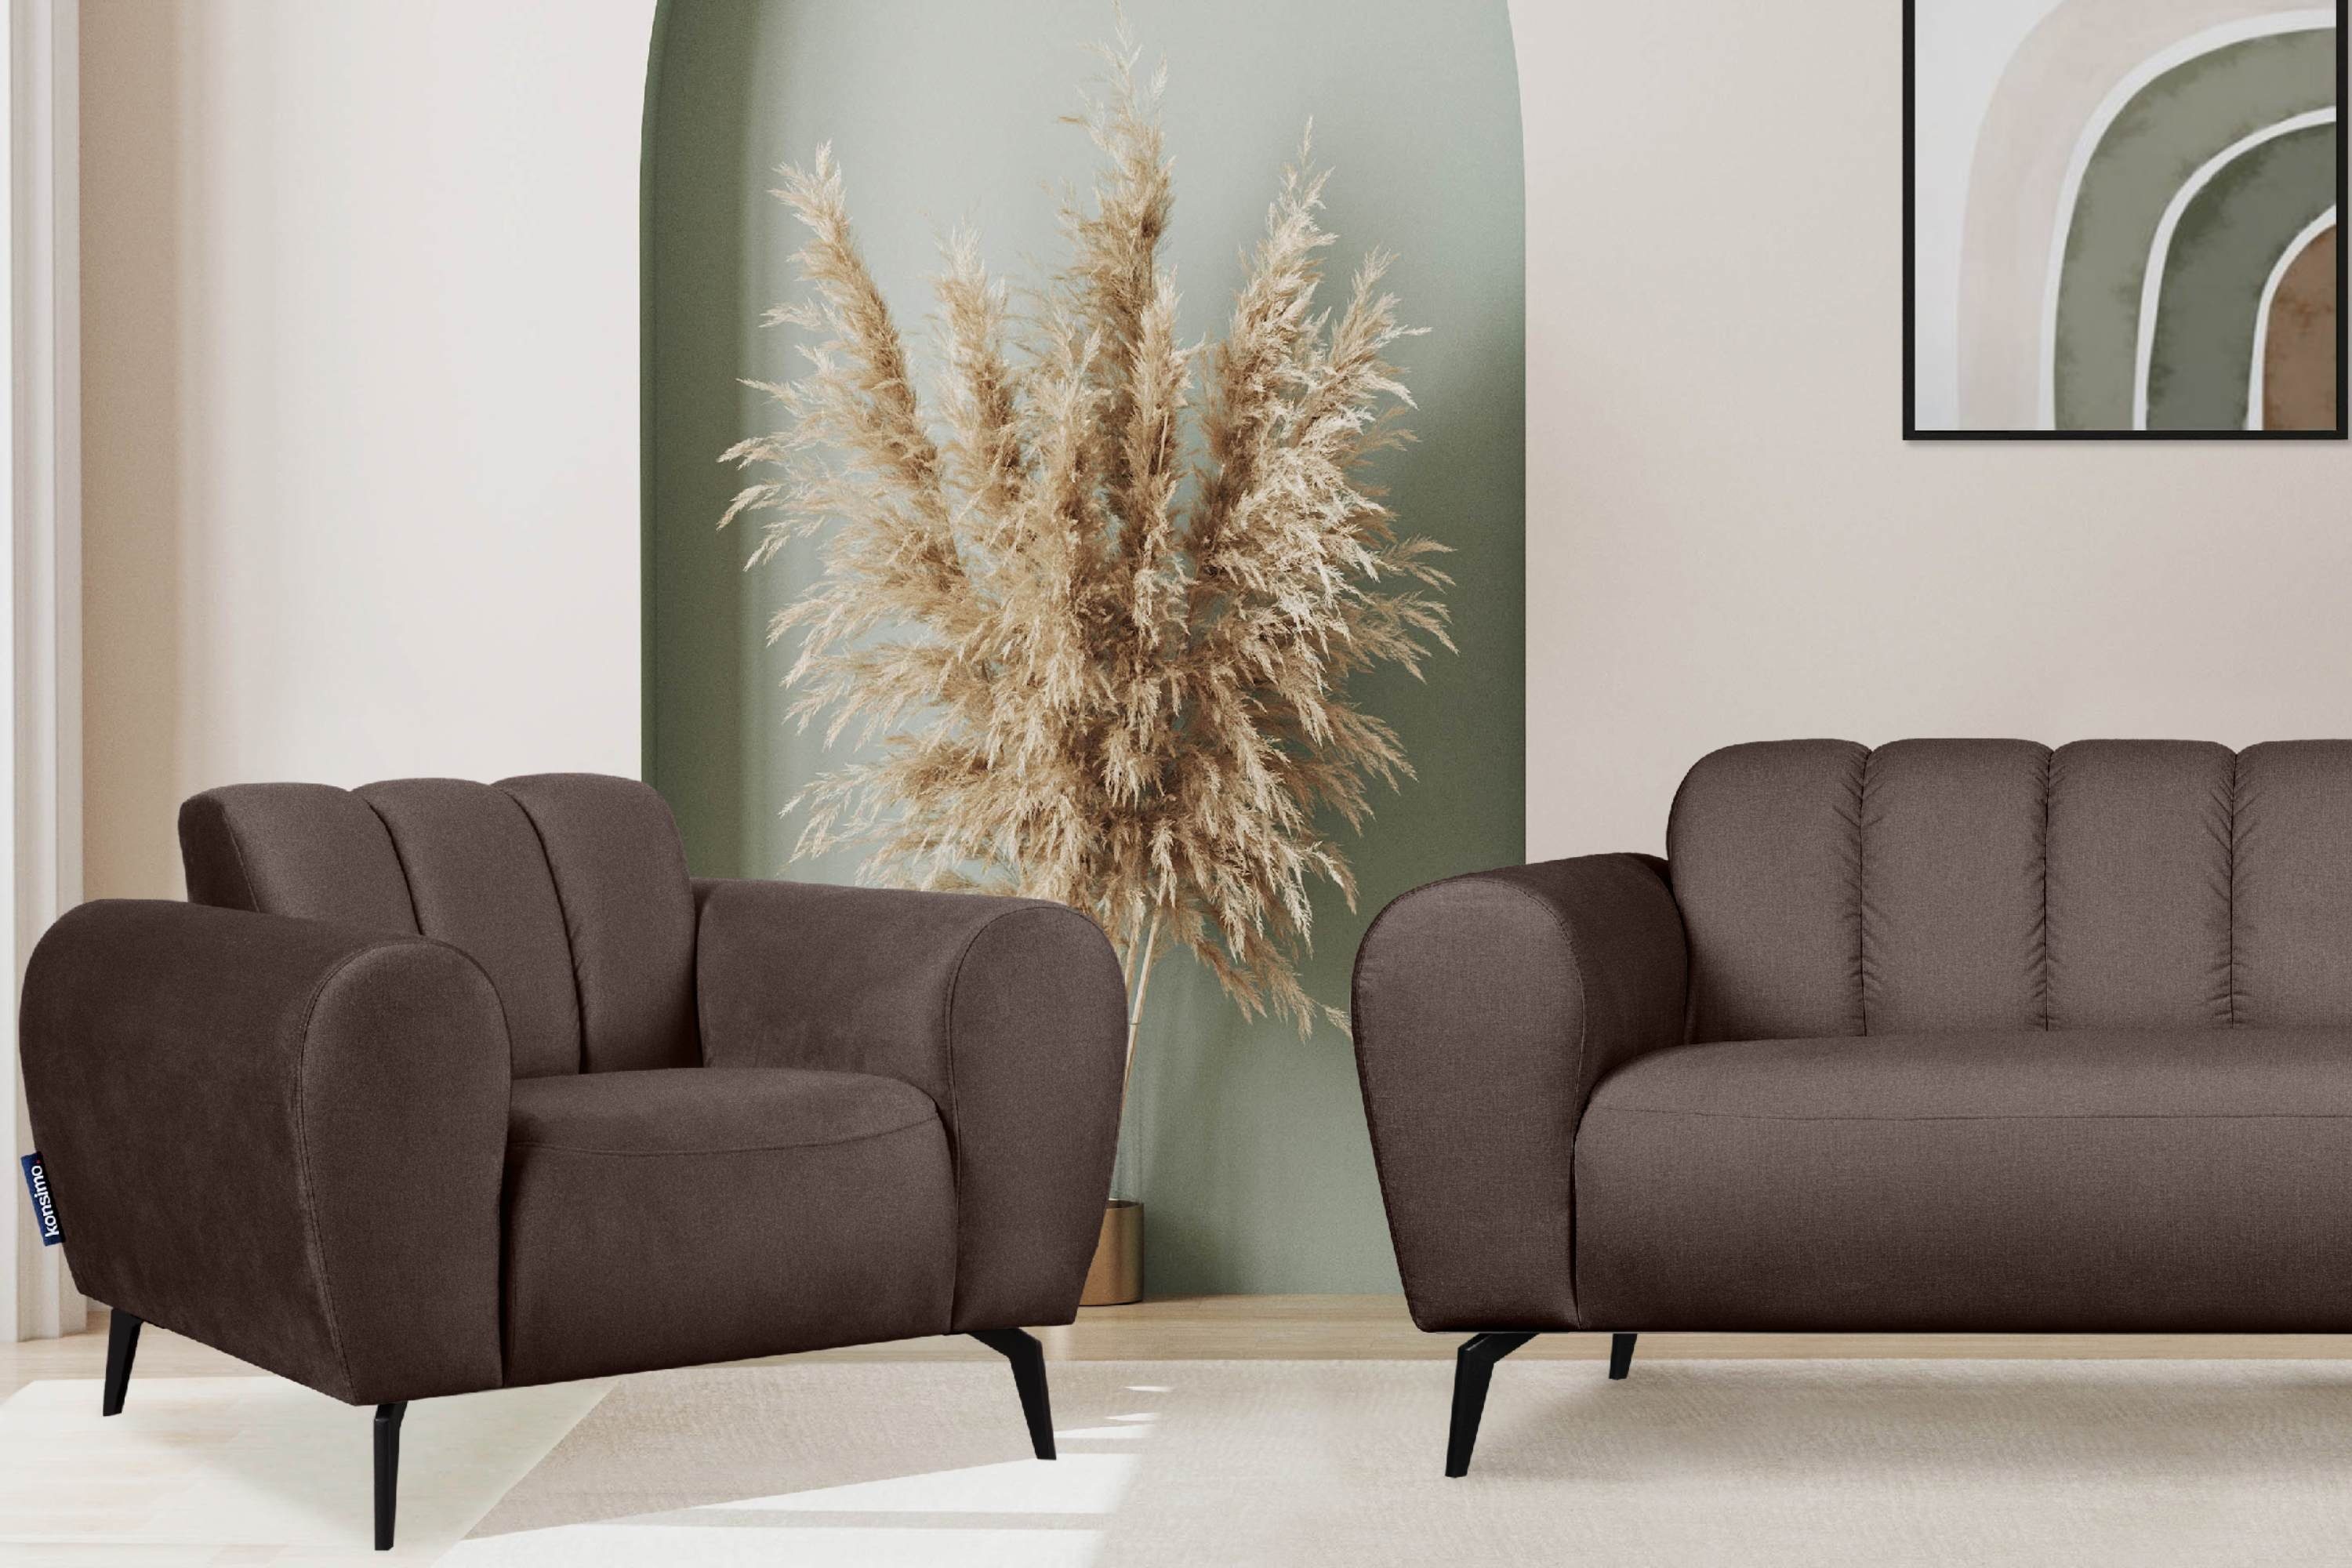 Konsimo Sessel RUBERO mit breiten Armlehnen, Eigenschaften, wasserabweisenden braun modernes Design mit Gewebe braun 